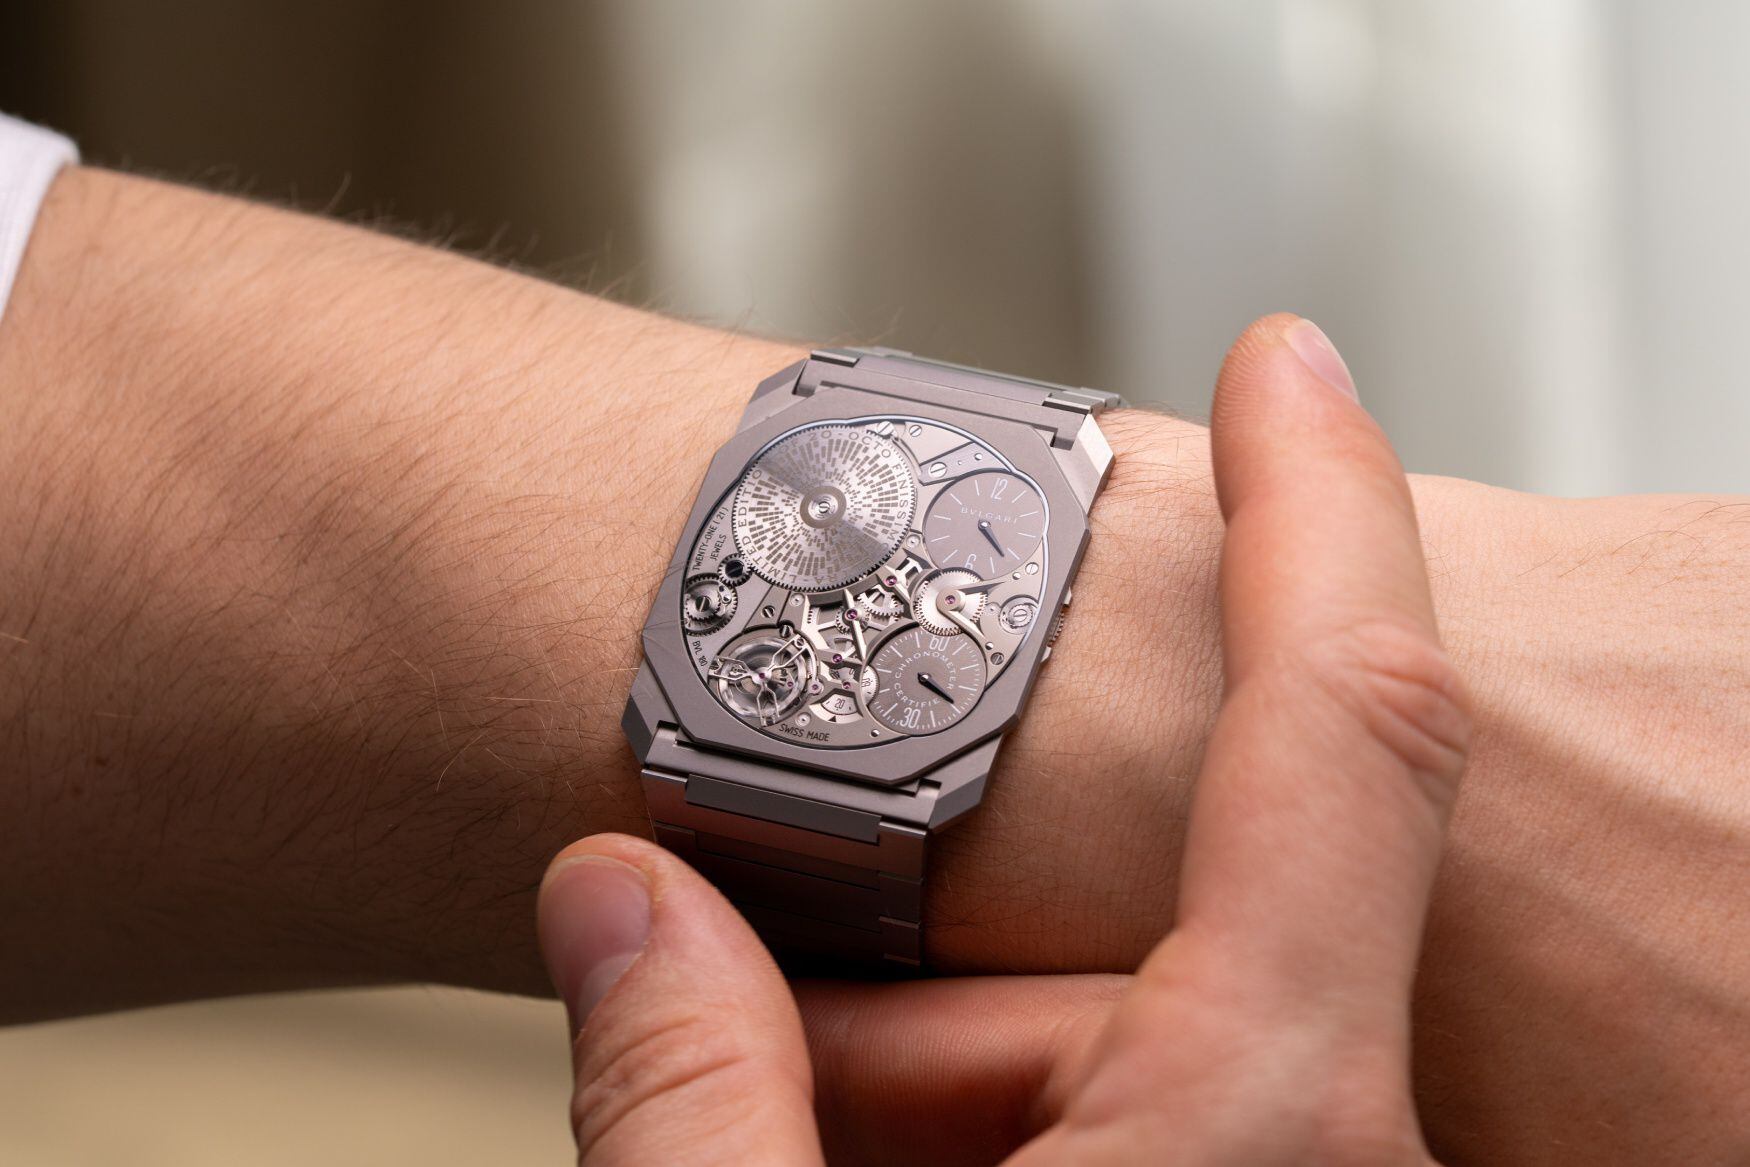 El reloj pulsera Octo Finissimo Ultra COSC de Bulgari tiene un grosor de 1,7 mm.